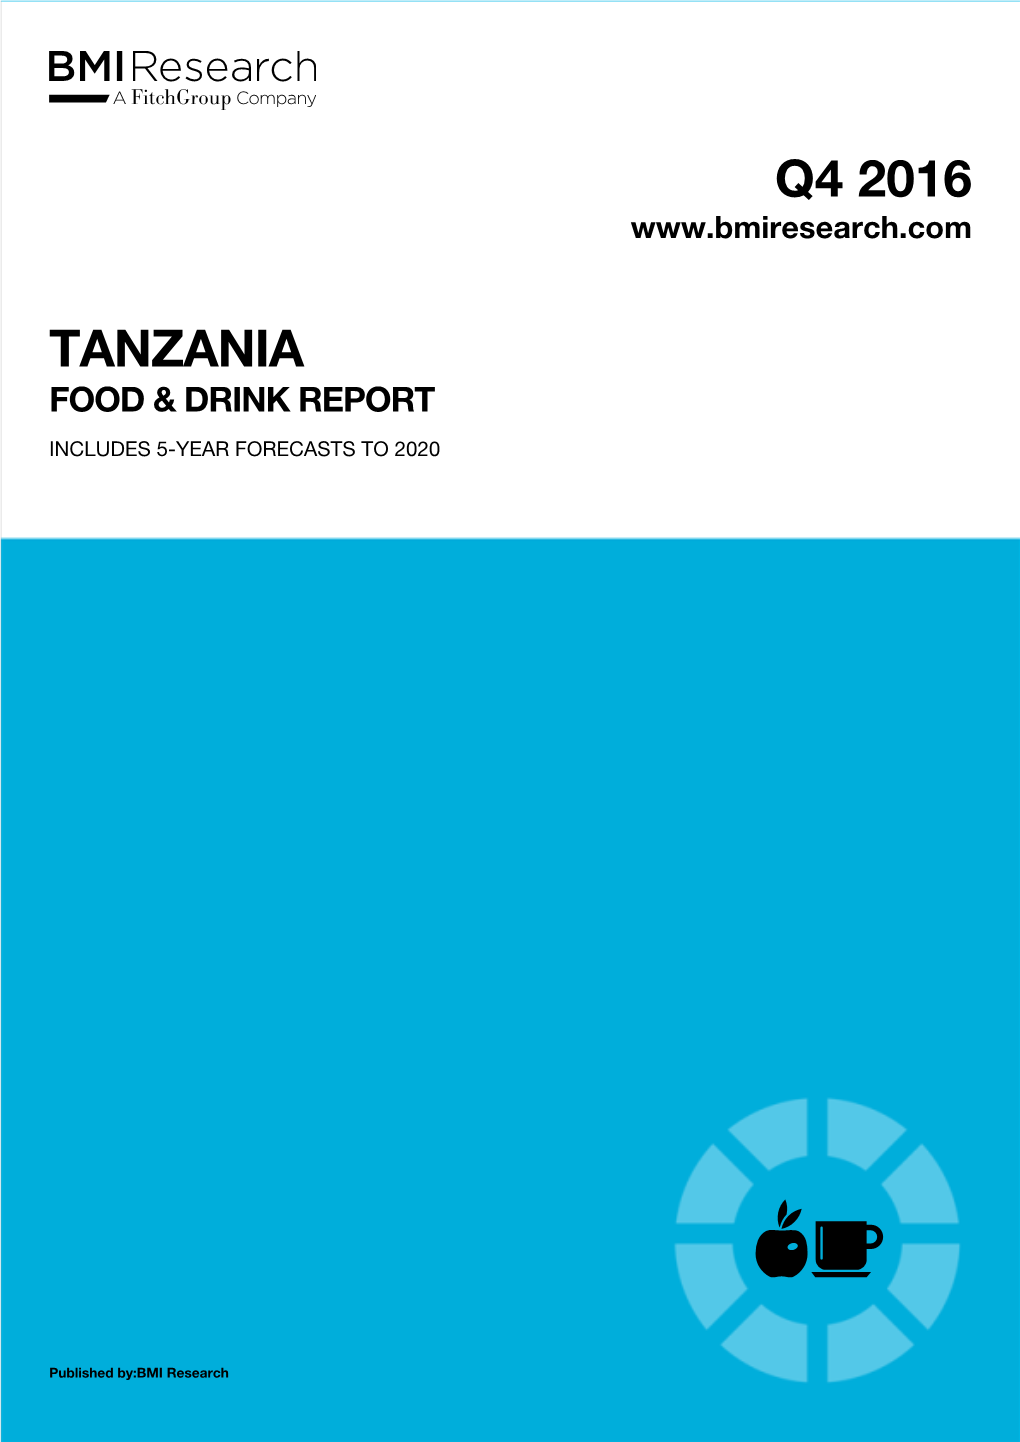 Tanzania Food & Drink Report Q4 2016